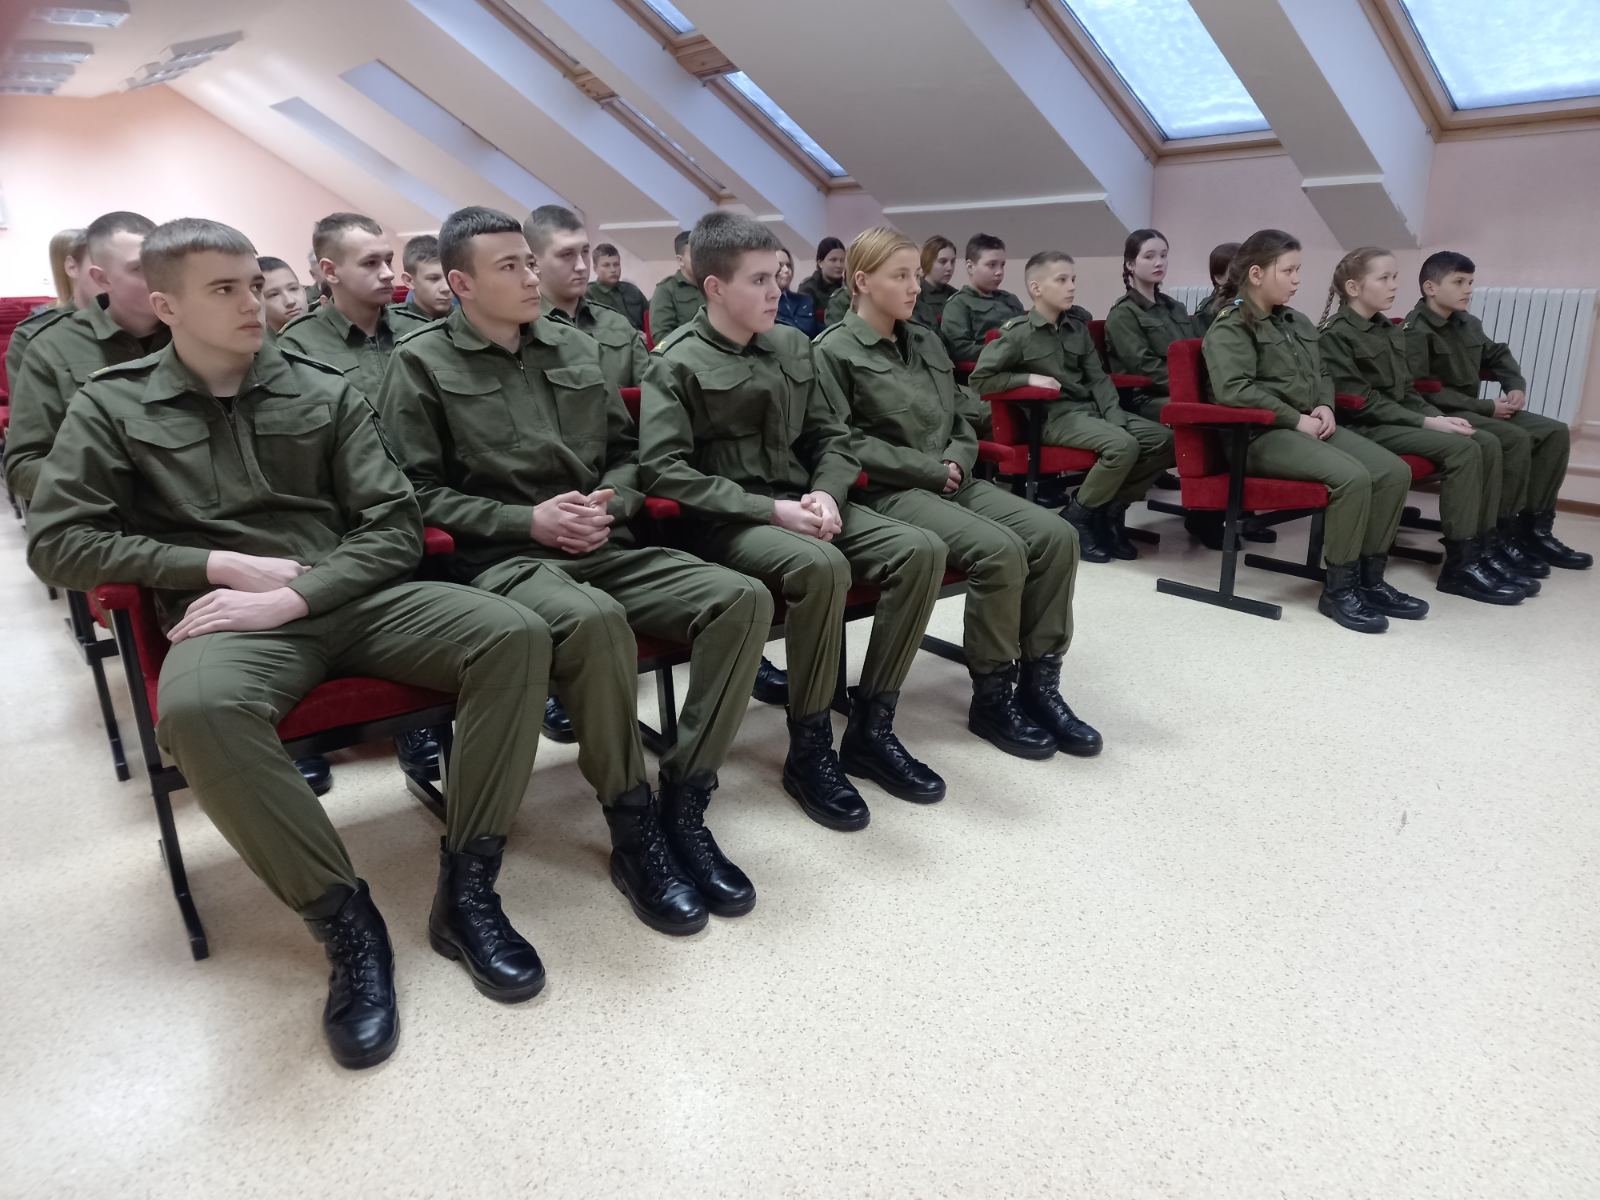 "Когда вырасту, хочу стать милиционером!" Как проходят занятия военно-патриотического клуба "Зубр"